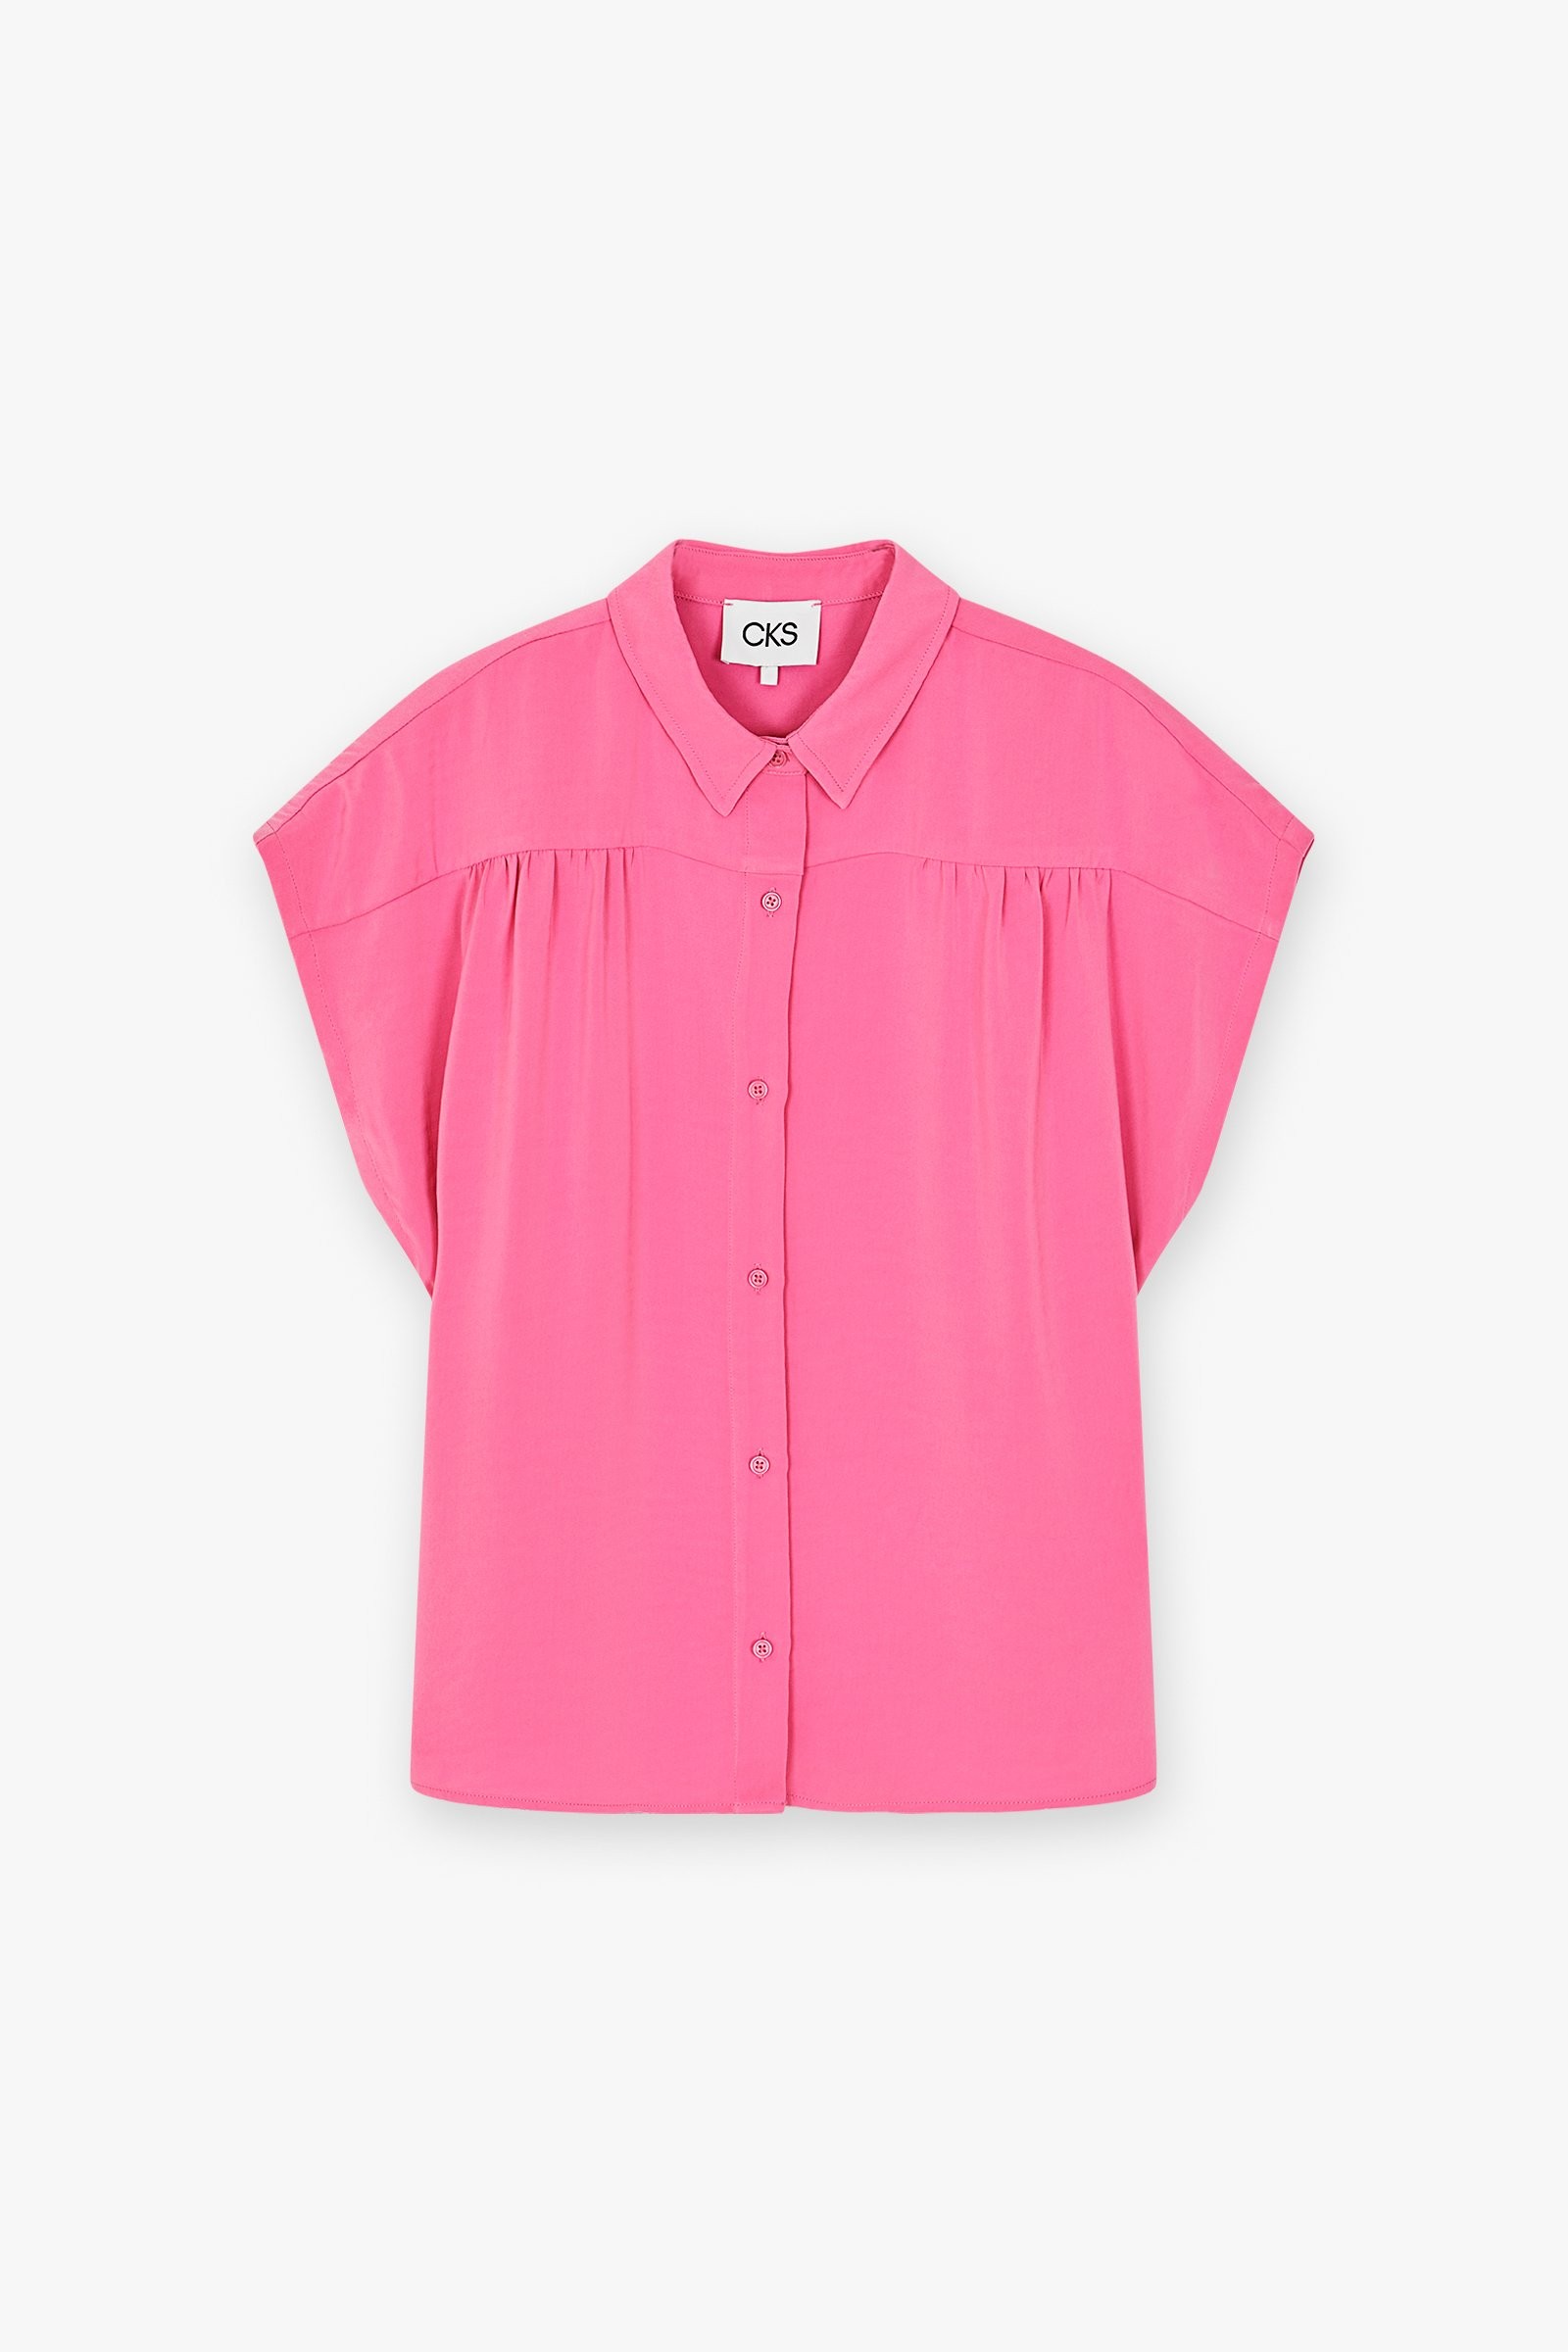 CKS Dames - ECHO - blouse korte mouwen - roze